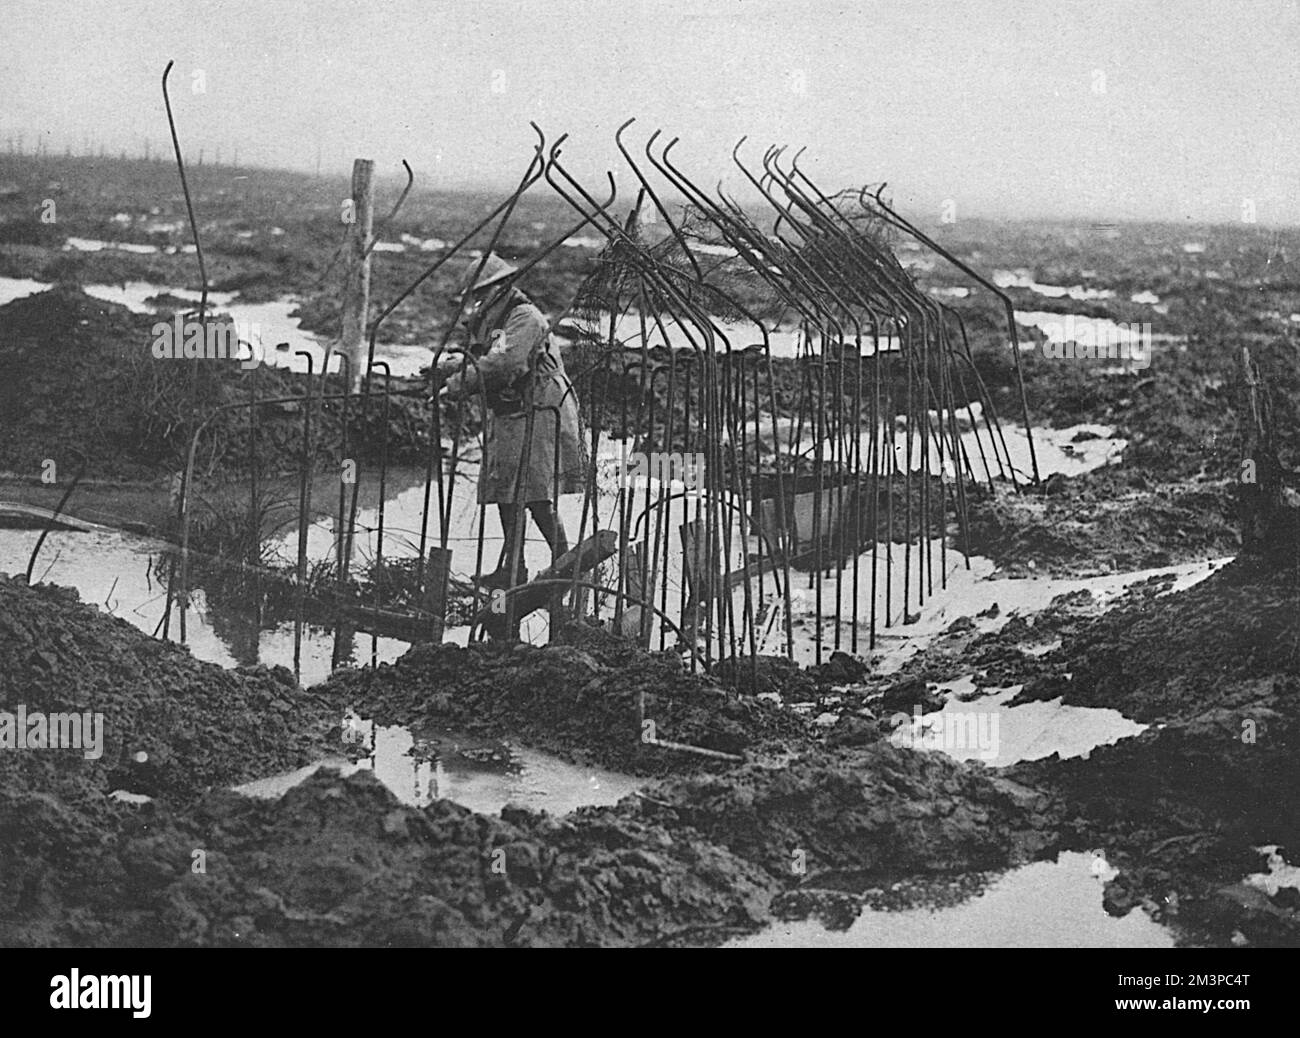 Un paysage boueux et inondé en Flandre avec un soldat britannique qui inspecte le squelette d'une boîte à pilules non achevée. L'image illustre les conditions déplorables et le terrain impossible. Date: 1918 Banque D'Images